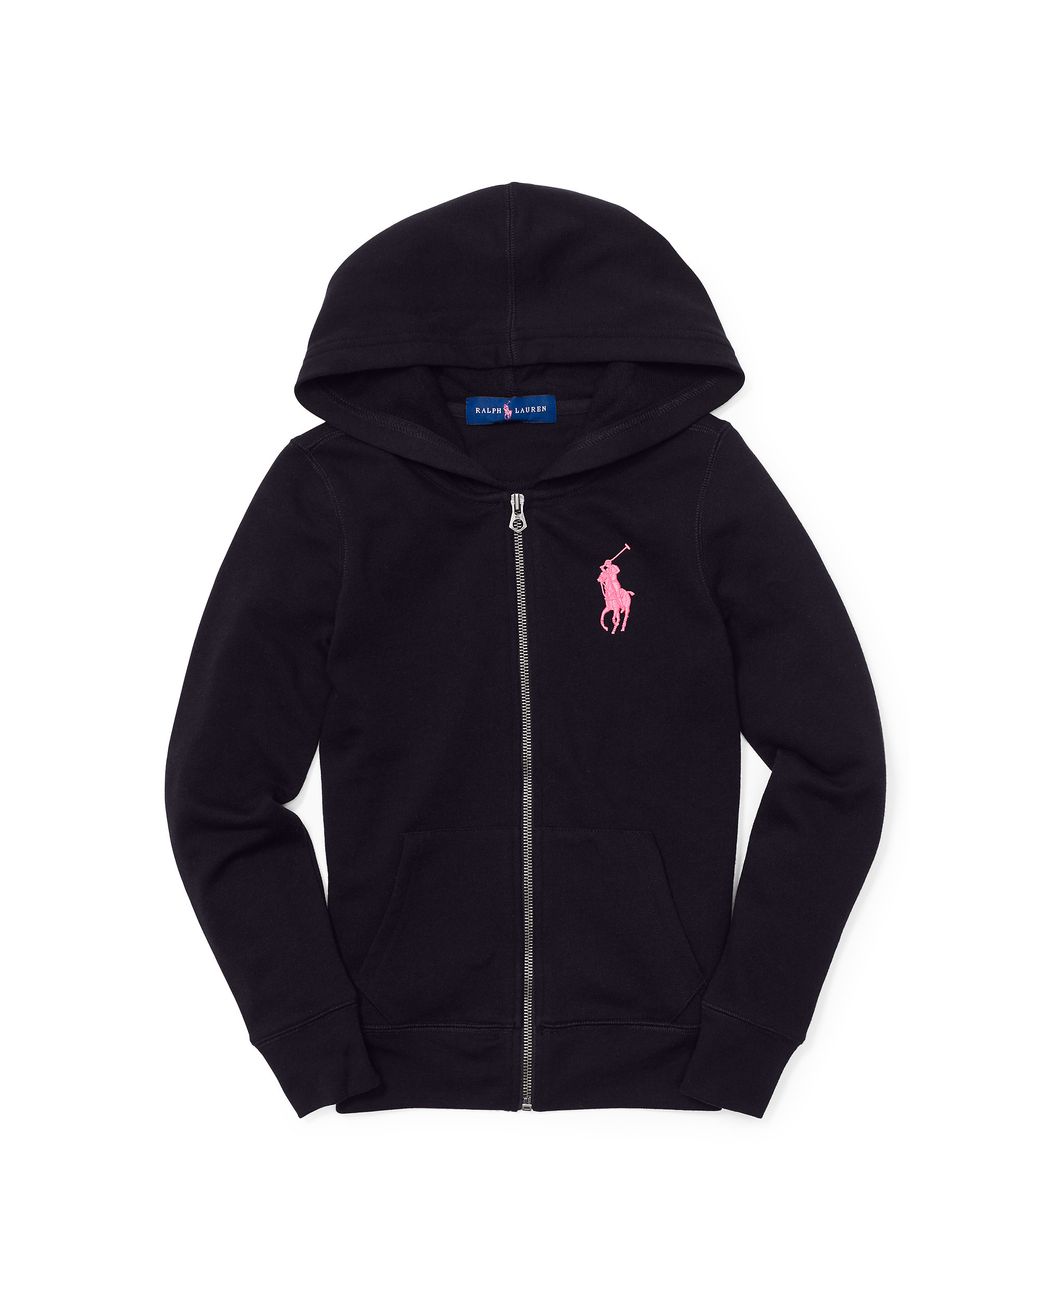 Ralph Lauren Pink Pony Fleece Zip Hoodie in Black | Lyst